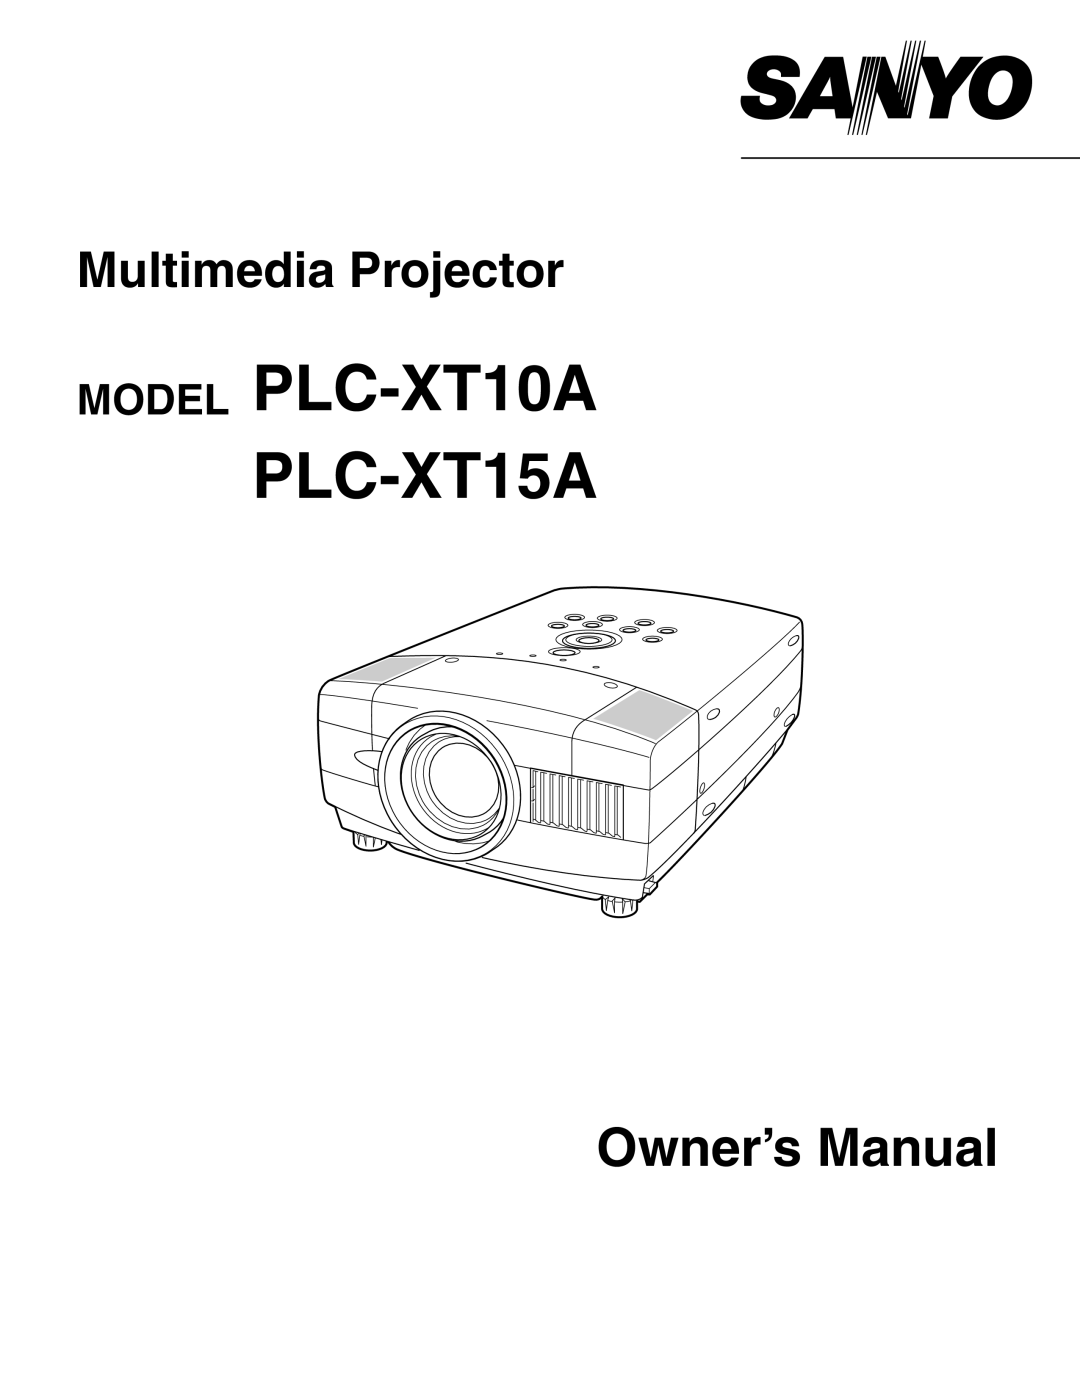 Sanyo owner manual MODEL PLC-XT10A PLC-XT15A, Owner’s Manual, Multimedia Projector 